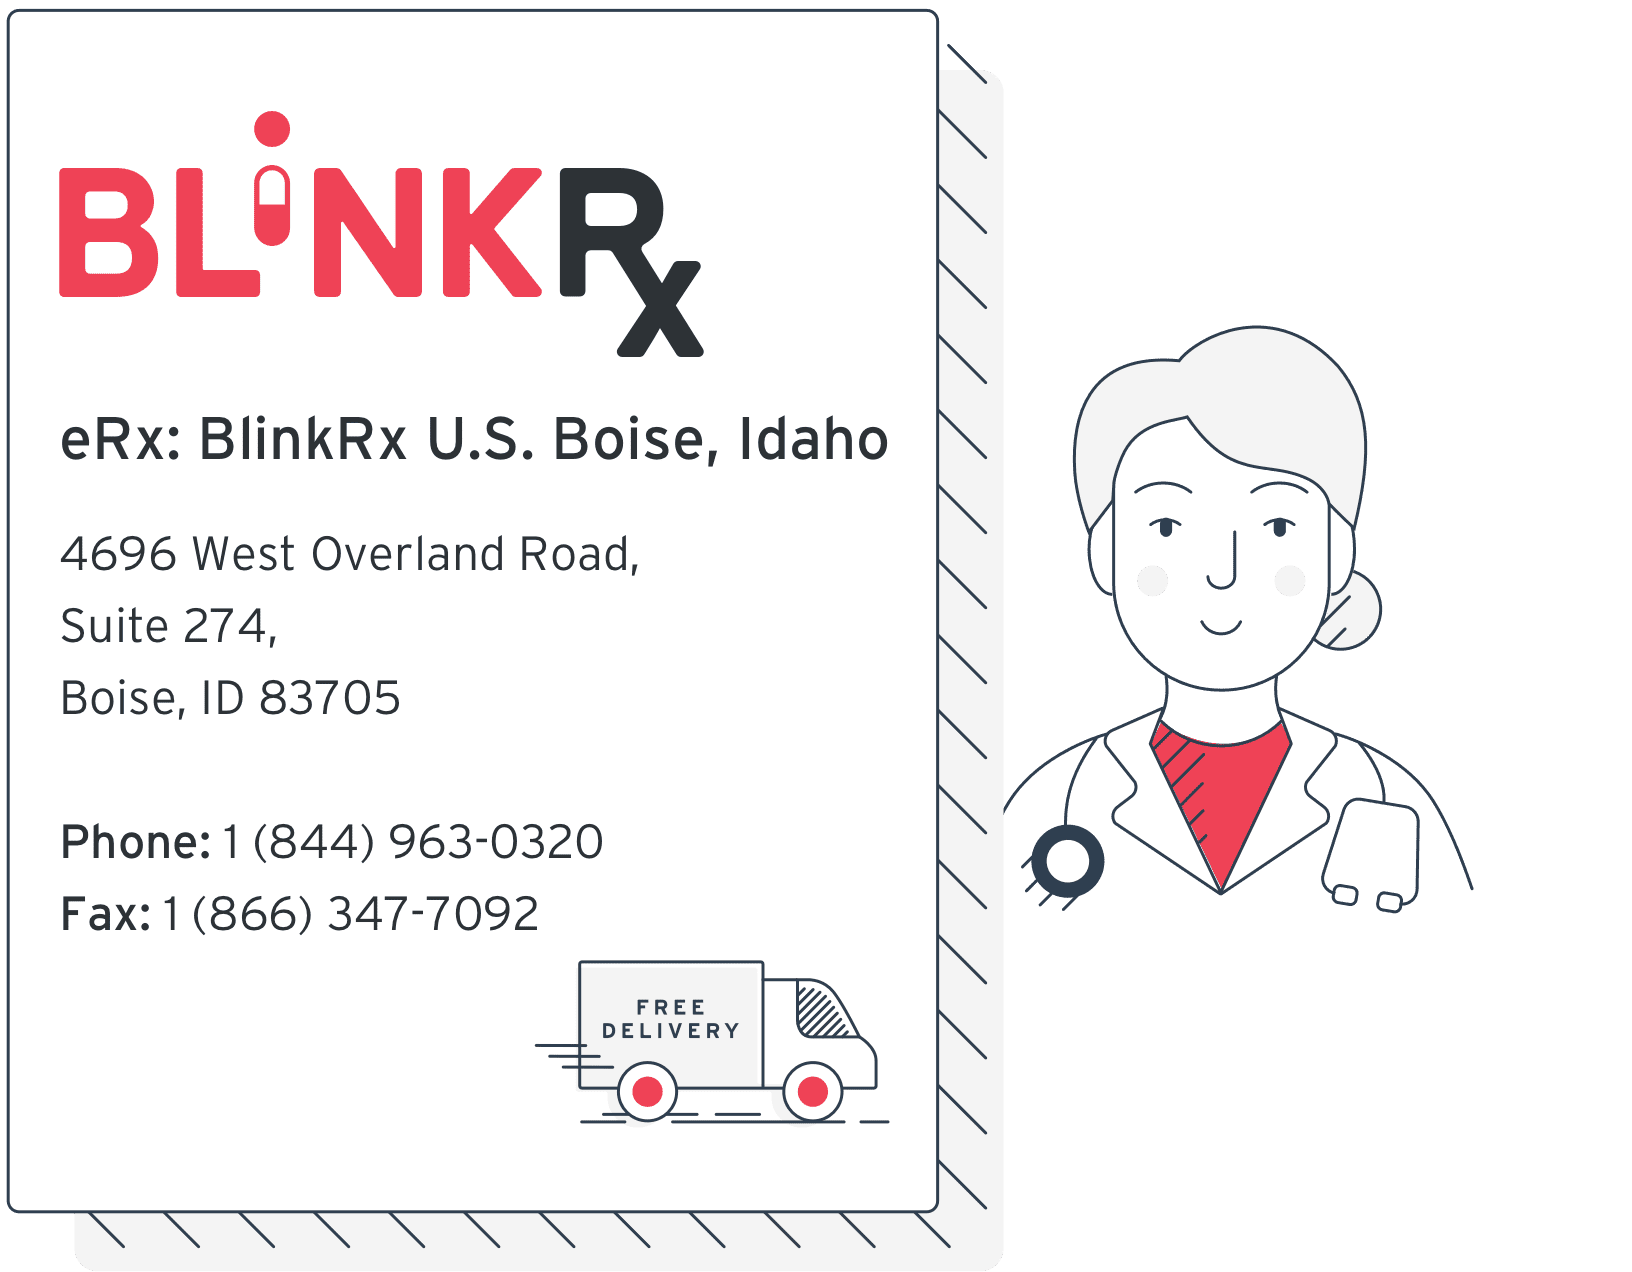 blink health online doctor visit